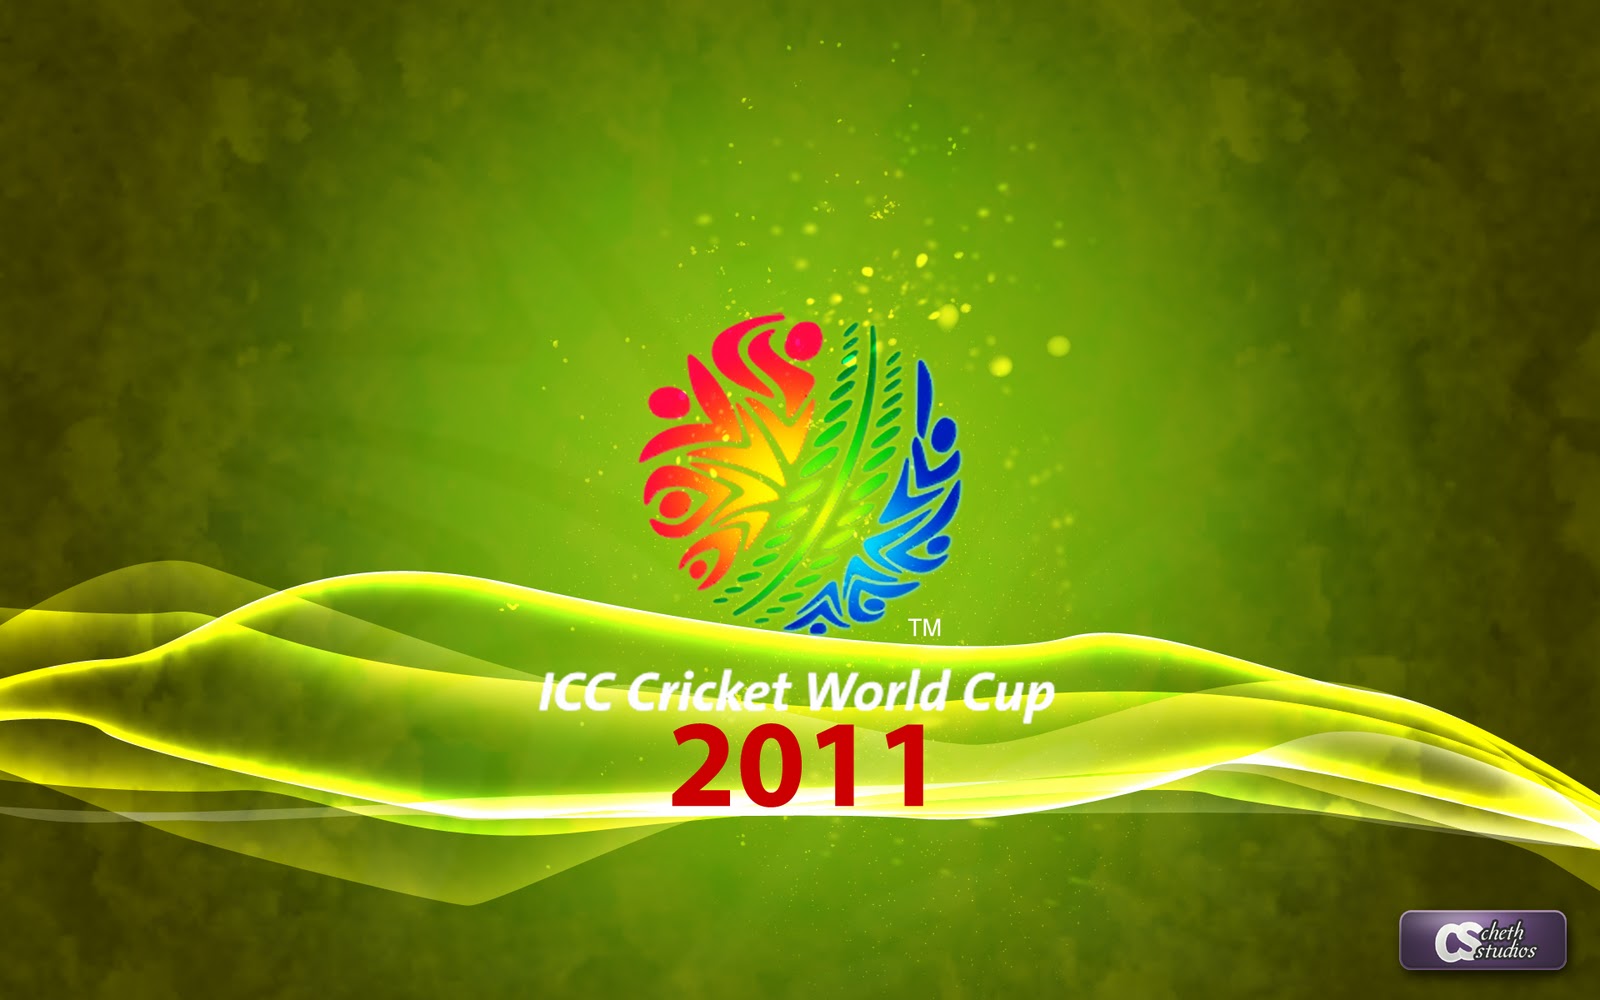 https://blogger.googleusercontent.com/img/b/R29vZ2xl/AVvXsEj3LKkYlzRnXfa3GT81BGKMxFFisR1ATACCGgzDJcLFQff4zqY6vkLtmEjLj5KPYkZGEJtRTiHQjjHeHPgNVCrWg3Asl3cLvAwiNuKjjtiAXCCe9QJWqNfLM9tt7QnD8eswJLJ4_R1-YiQ/s1600/icc-cricket-world-cup-2011-wallpapers%25255Bworld4free.in%25255D+%2525286%252529.jpg